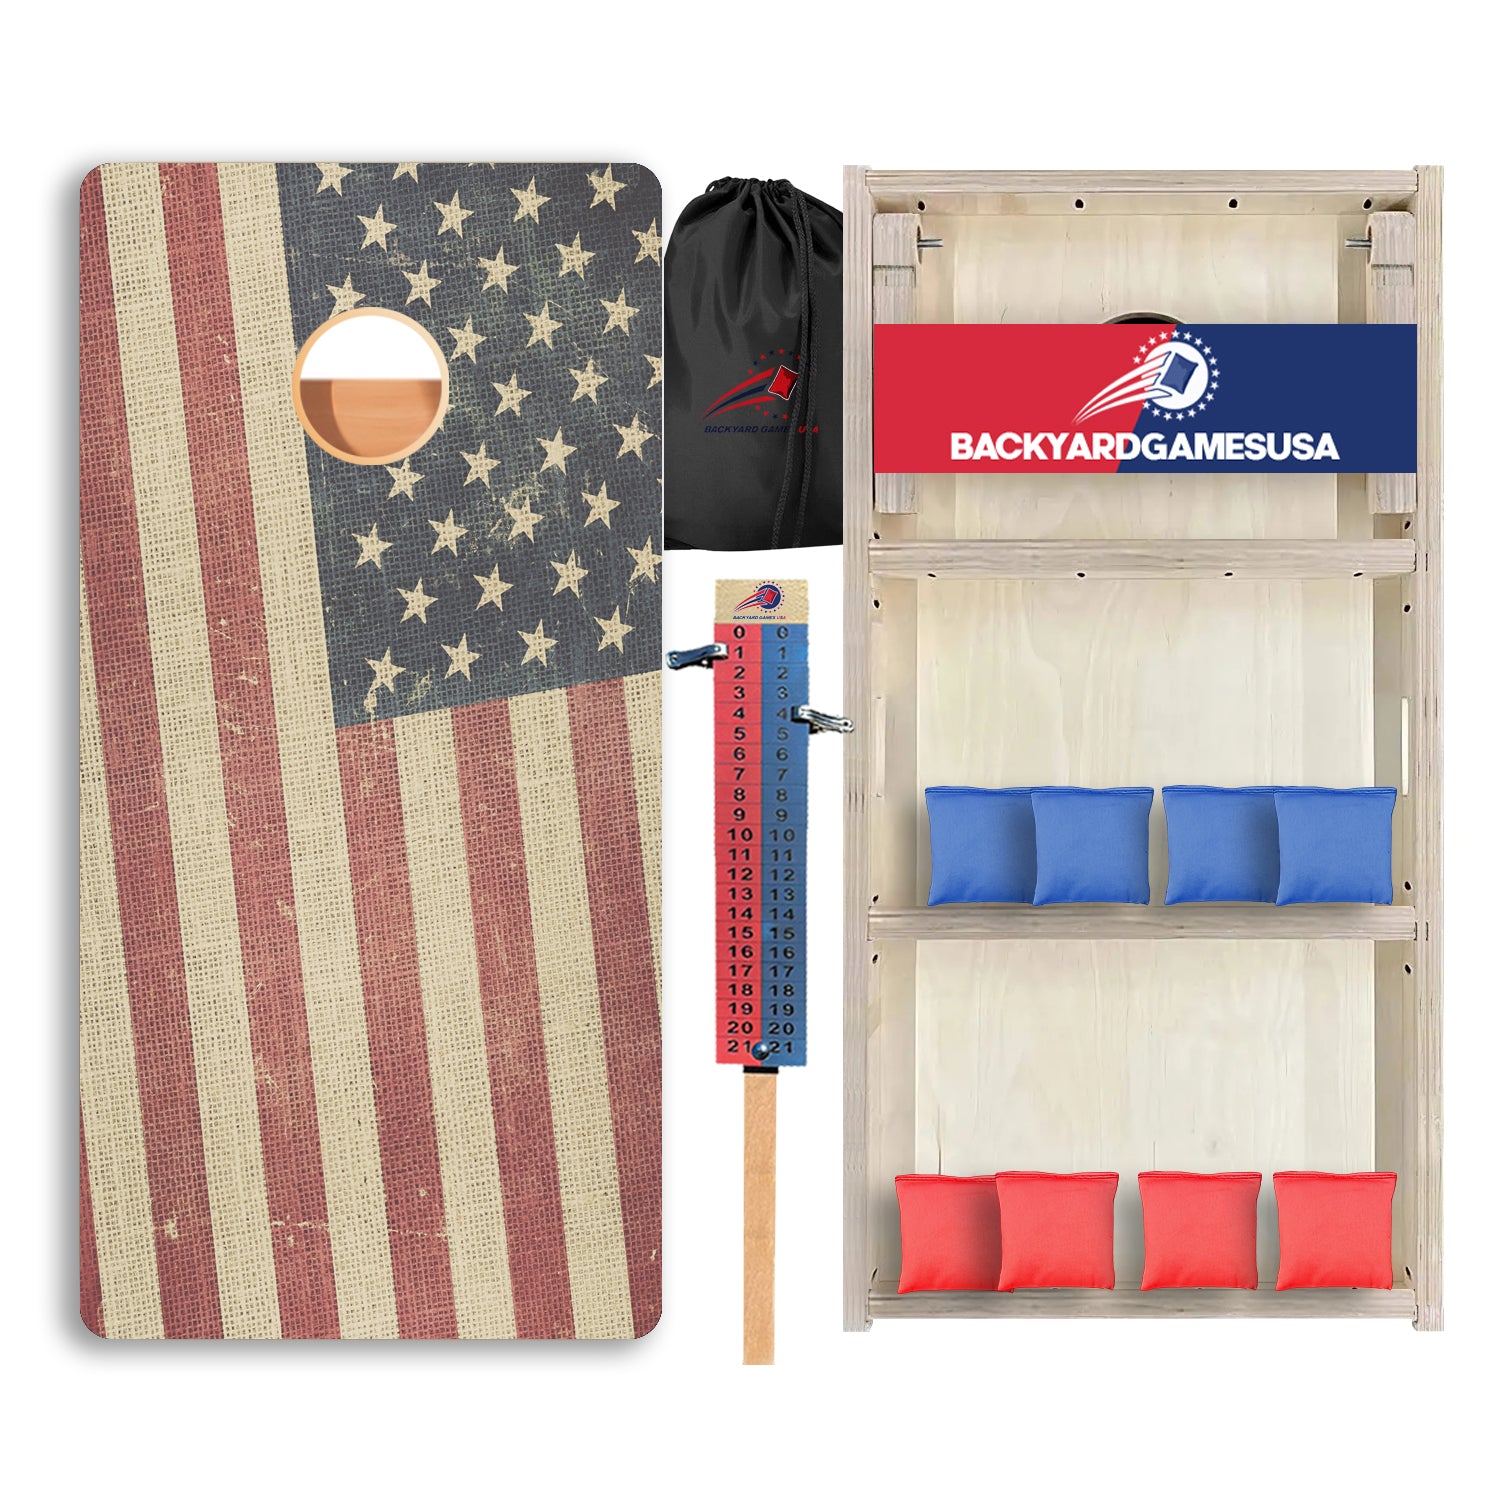 USA Flag Professional Cornhole Boards